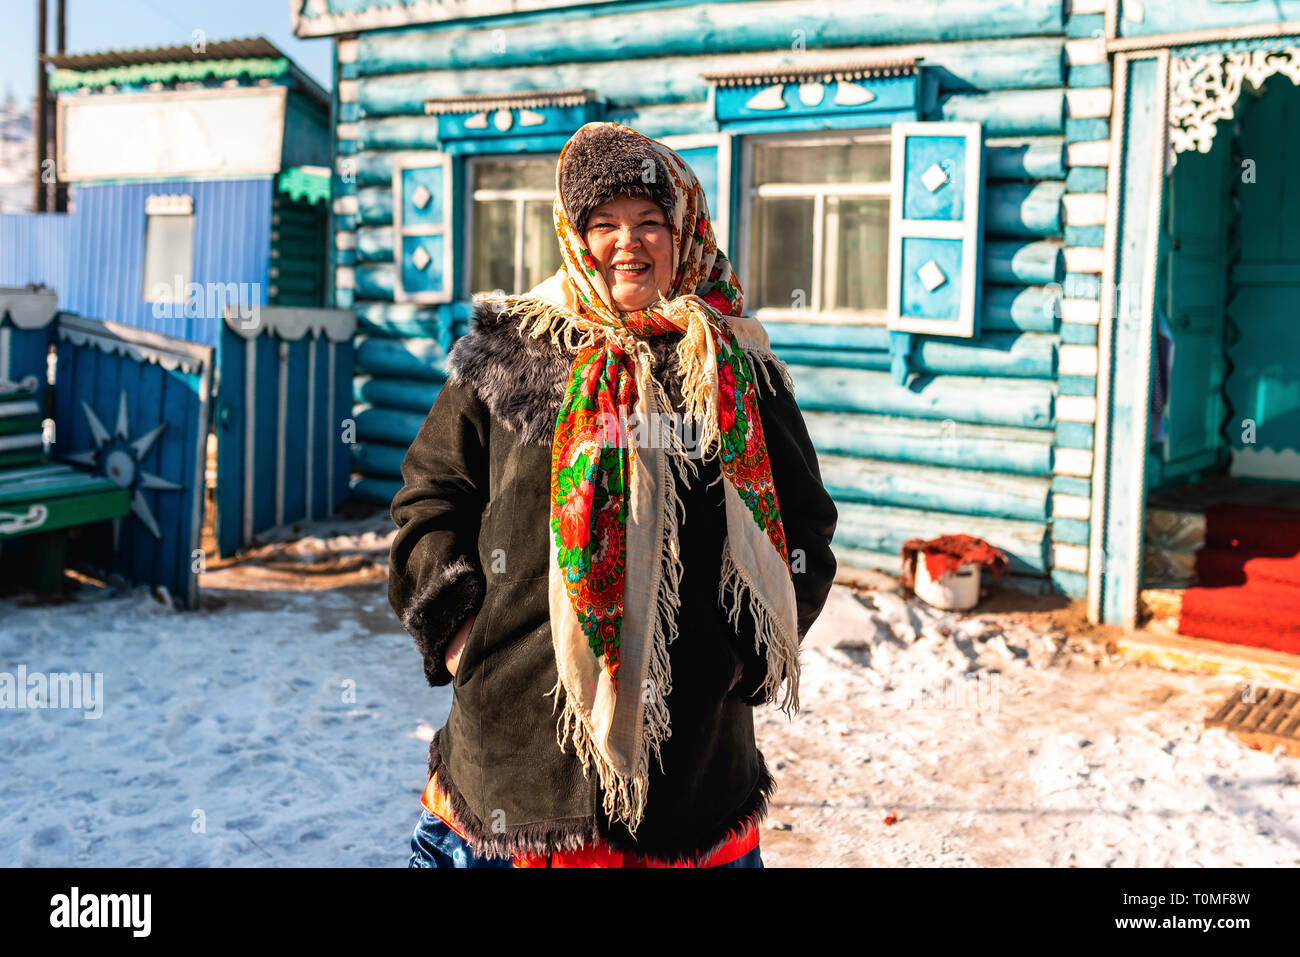 Older woman woman in Siberia, Russia Stock Photo